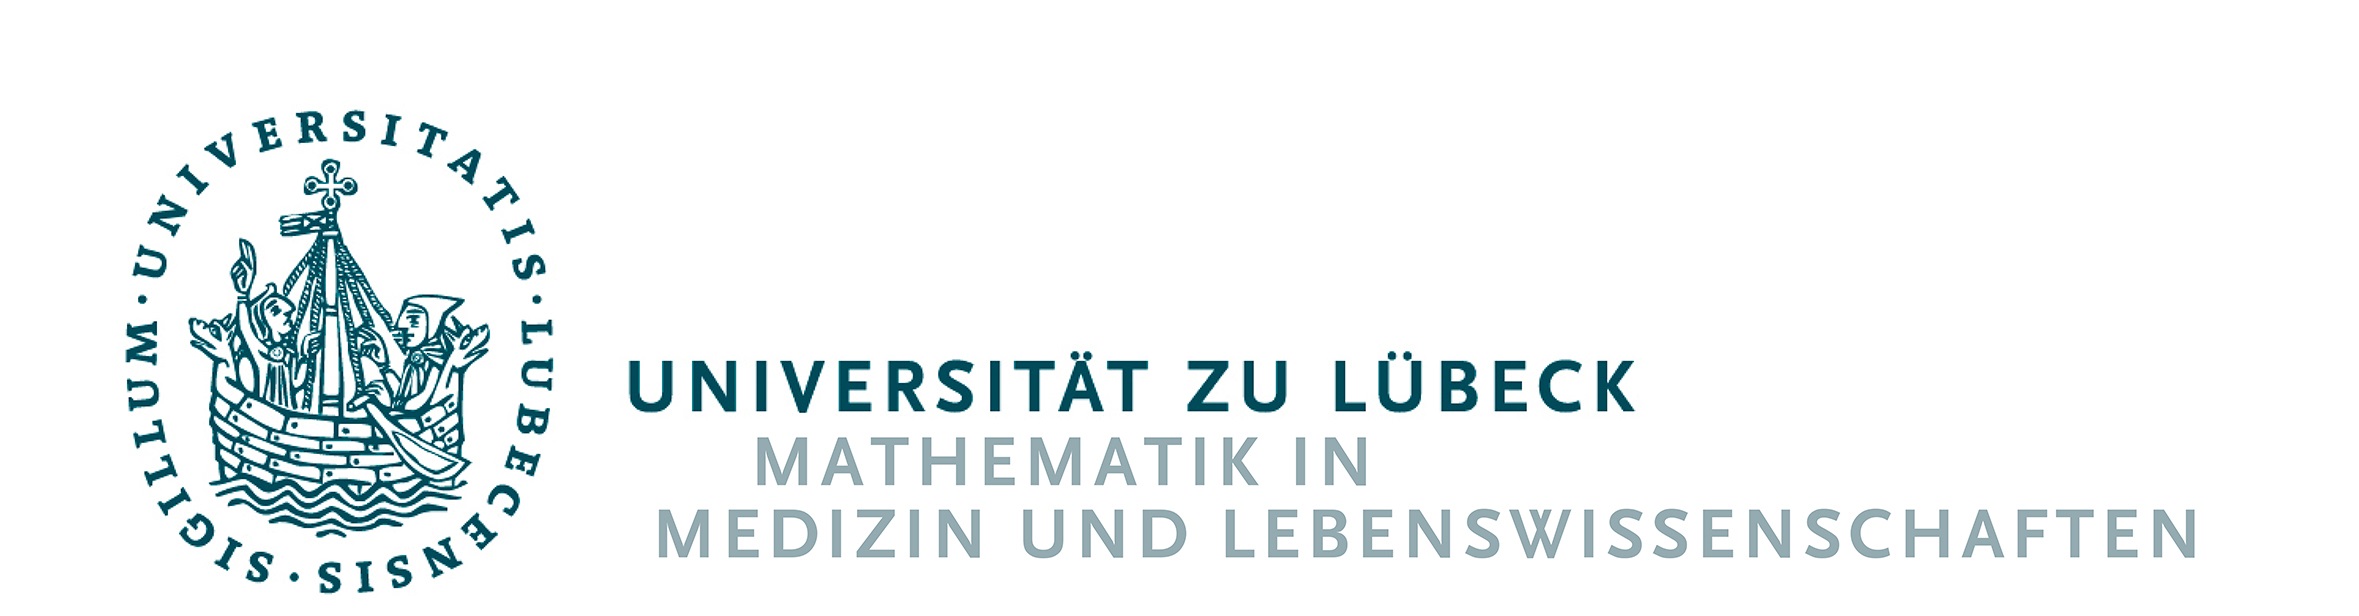 Mathematik studieren in Lübeck